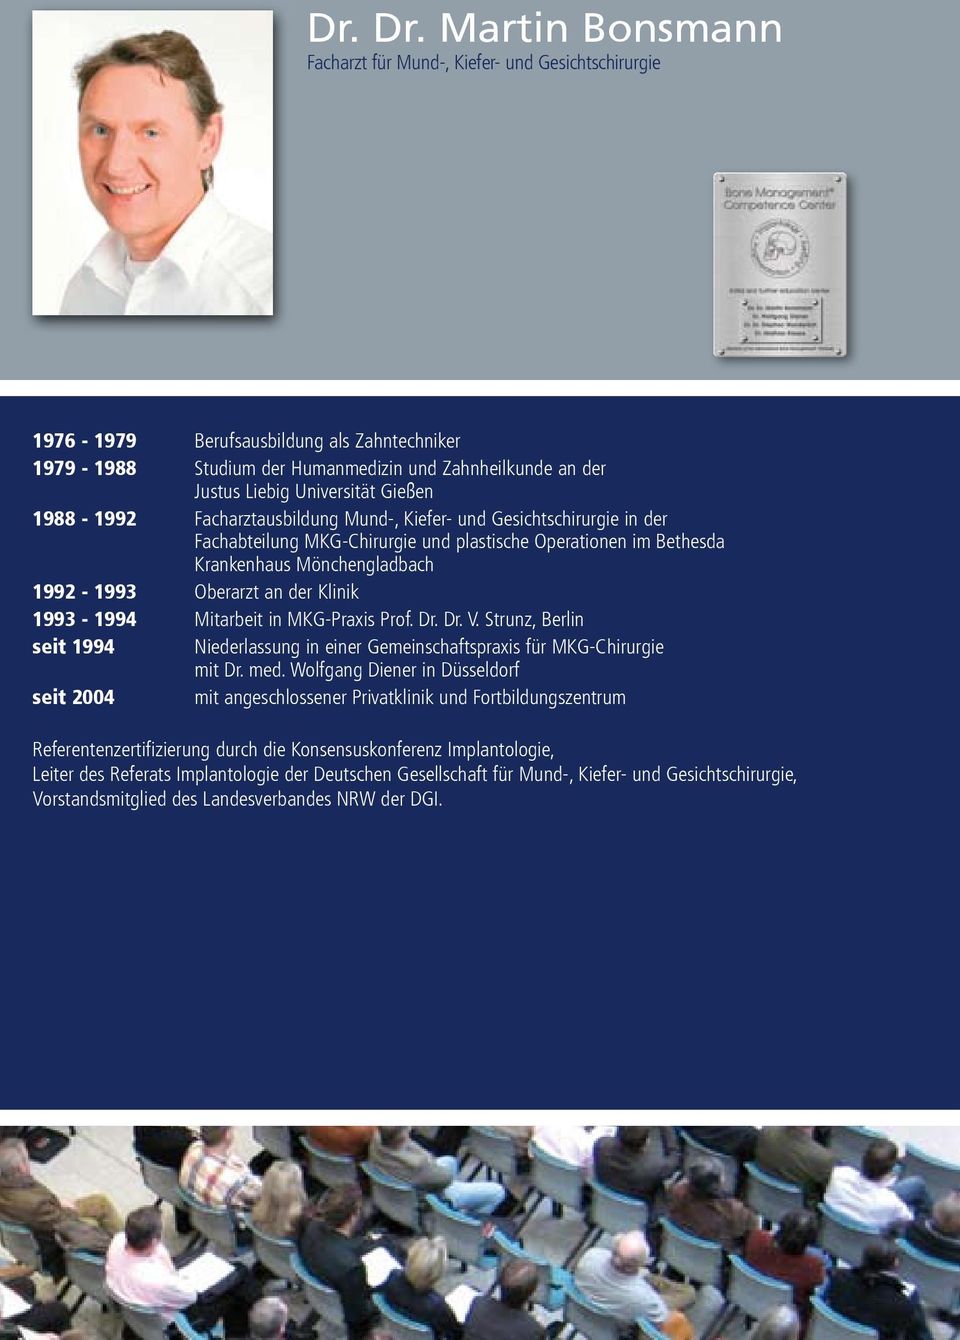 Gießen 1988-1992 Facharztausbildung Mund-, Kiefer- und Gesichtschirurgie in der Fachabteilung MKG-Chirurgie und plastische Operationen im Bethesda Krankenhaus Mönchengladbach 1992-1993 Oberarzt an